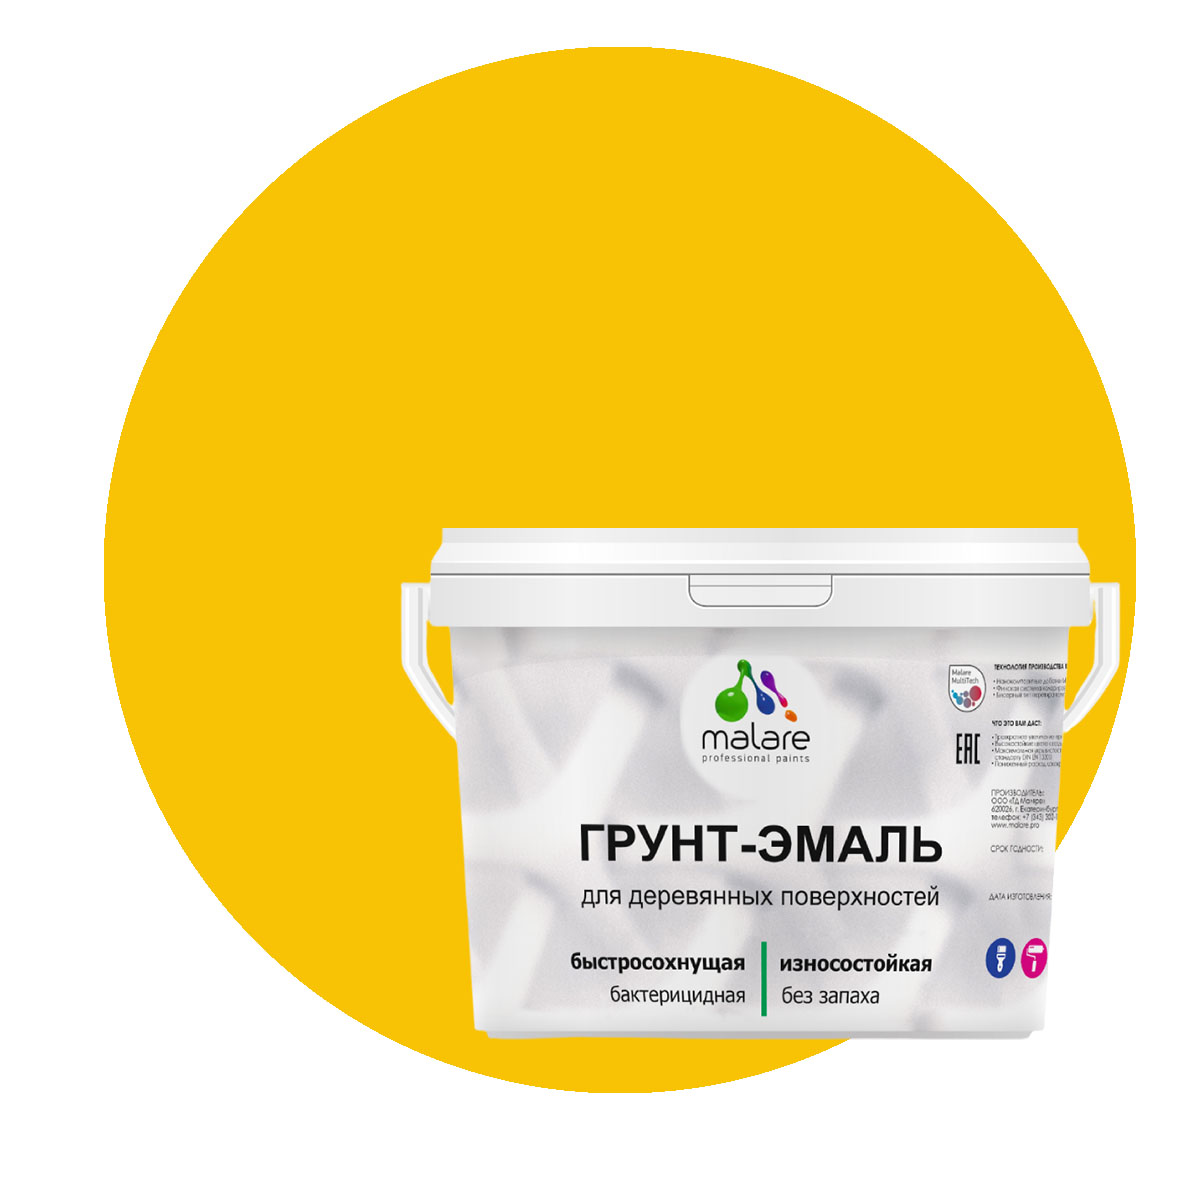 Грунт-Эмаль 3 в 1 Malare для деревянных поверхностей, масло тмина, 10 кг. присадка в масло двигателя для восстановления двс и устранения расхода масла suprotec